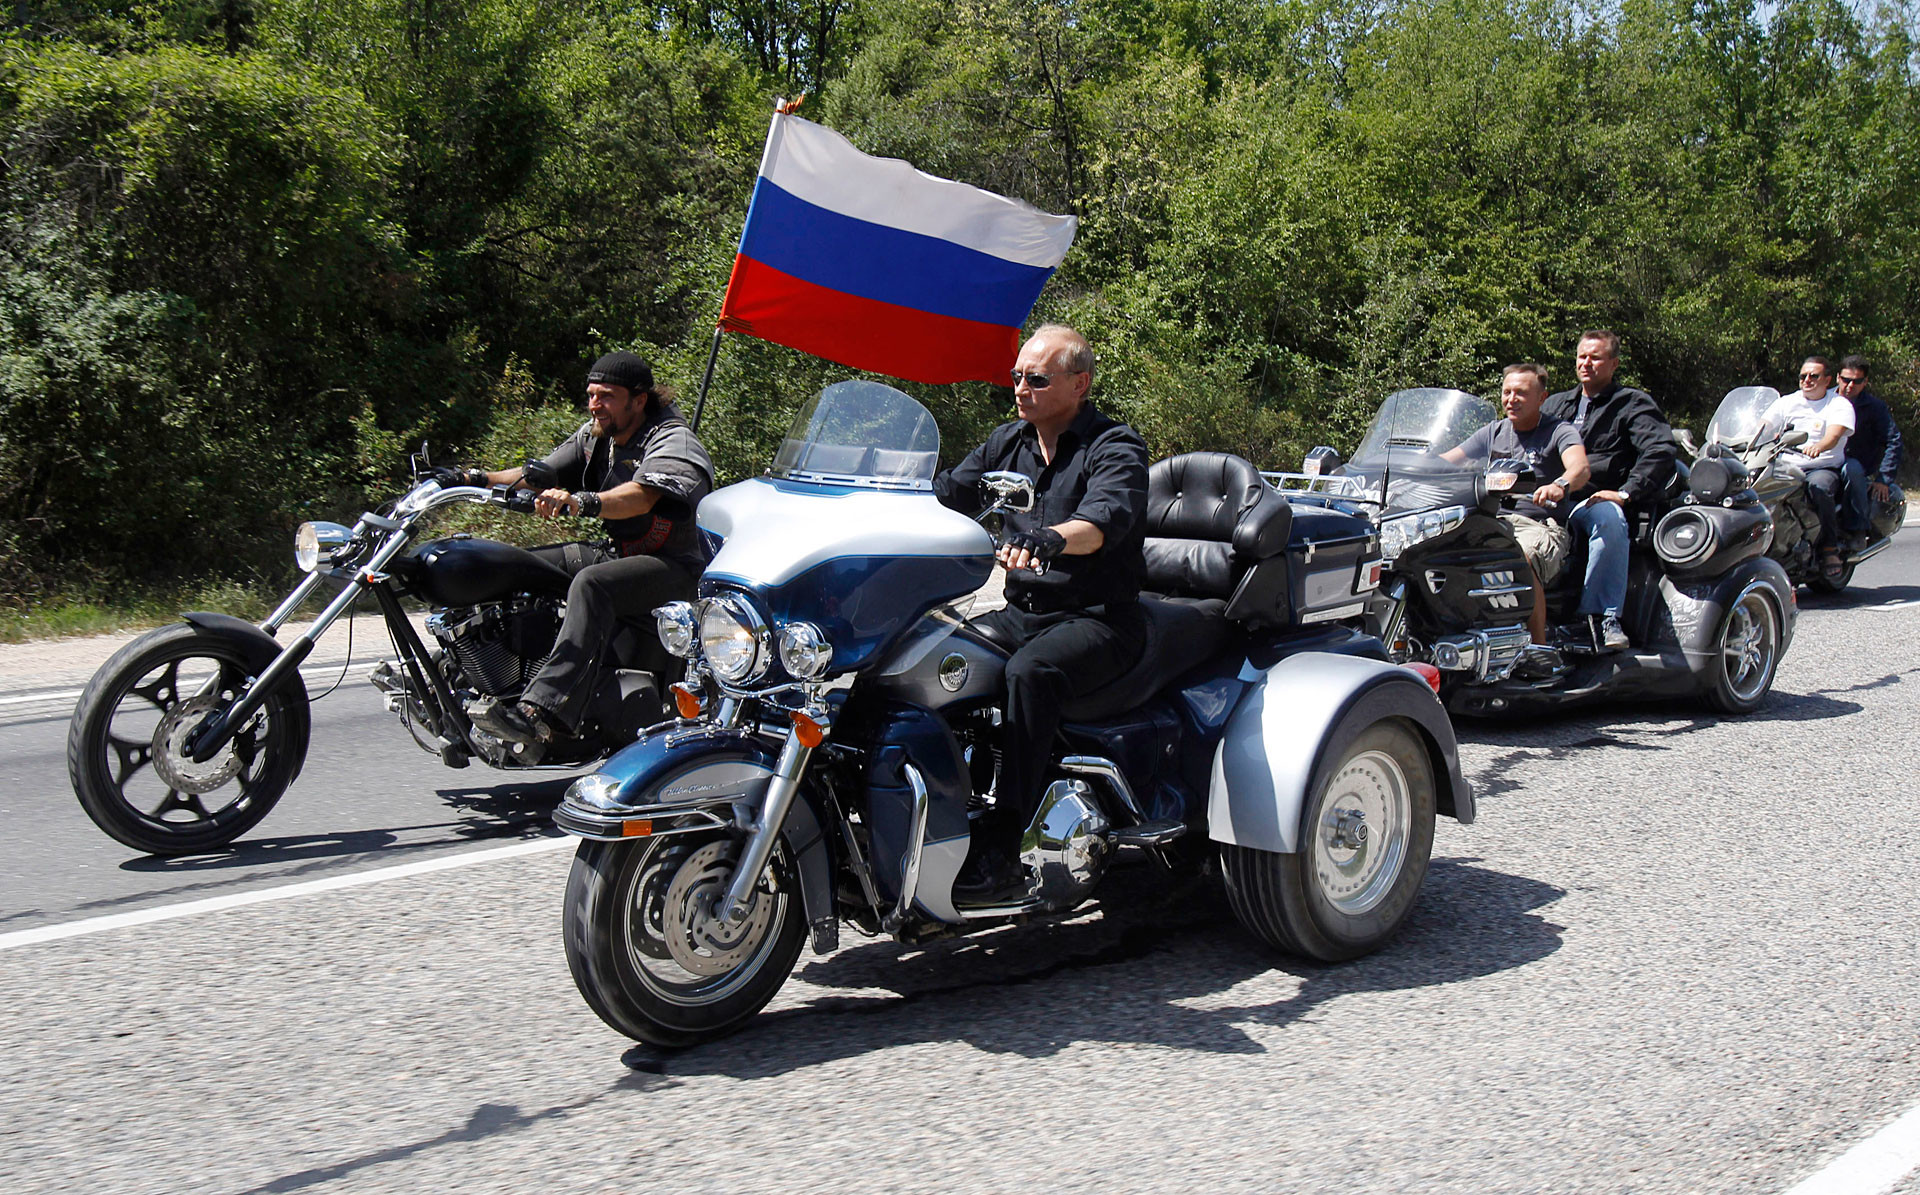 Путин кара Harley Davidson Lehman Trike на срещата на руските и украински мотористи край Севастопол, 24 юли 2010 г.